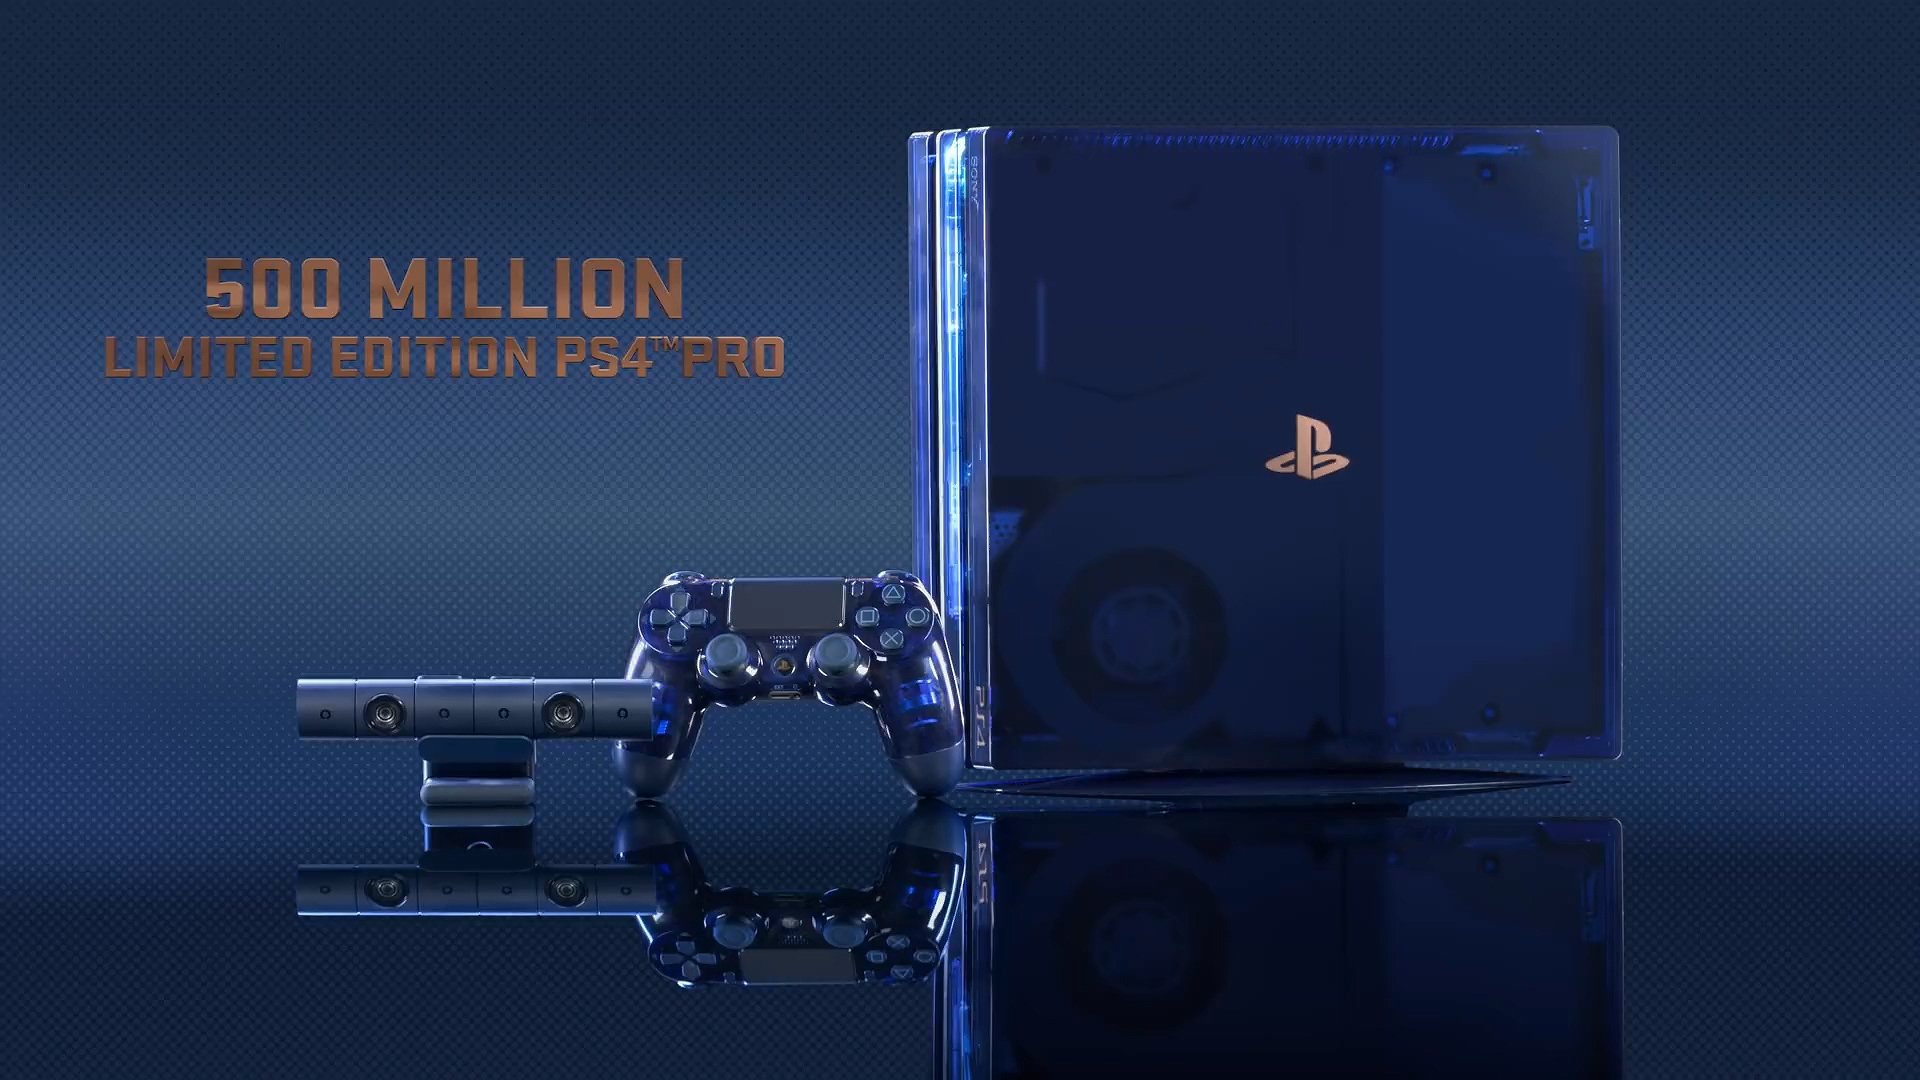 国内玩家清晨冒雨排队买PS4 PRO 5亿限量版